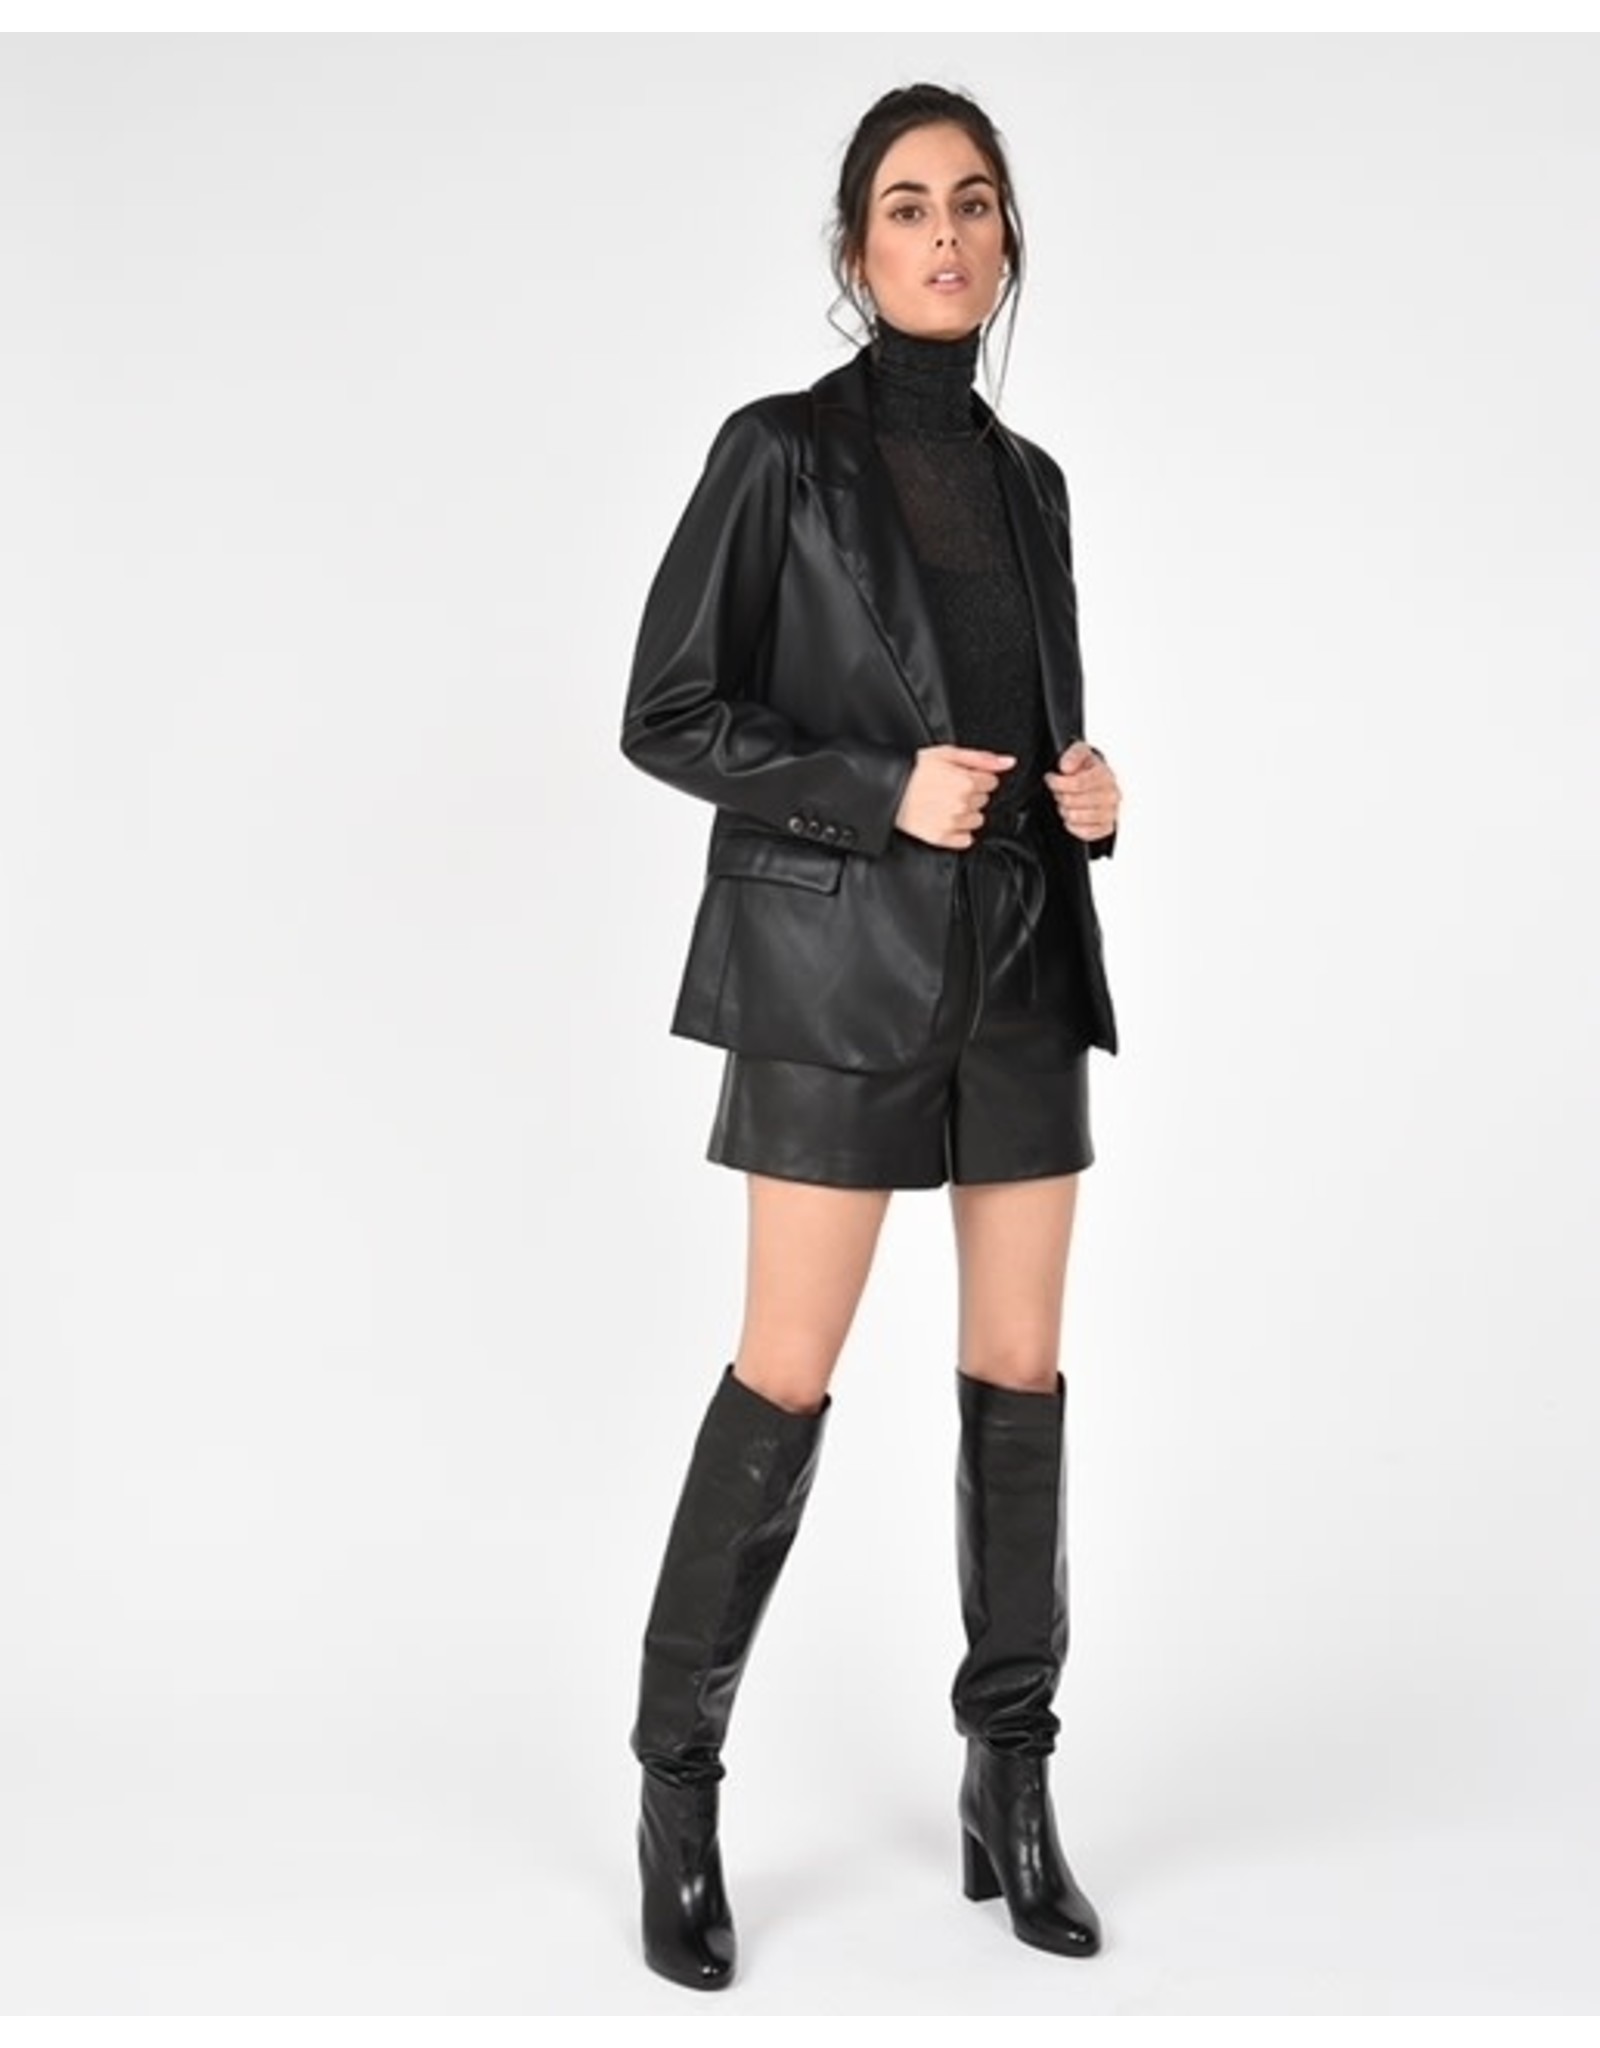 Molly Bracken Molly Bracken - Faux leather blazer (black)